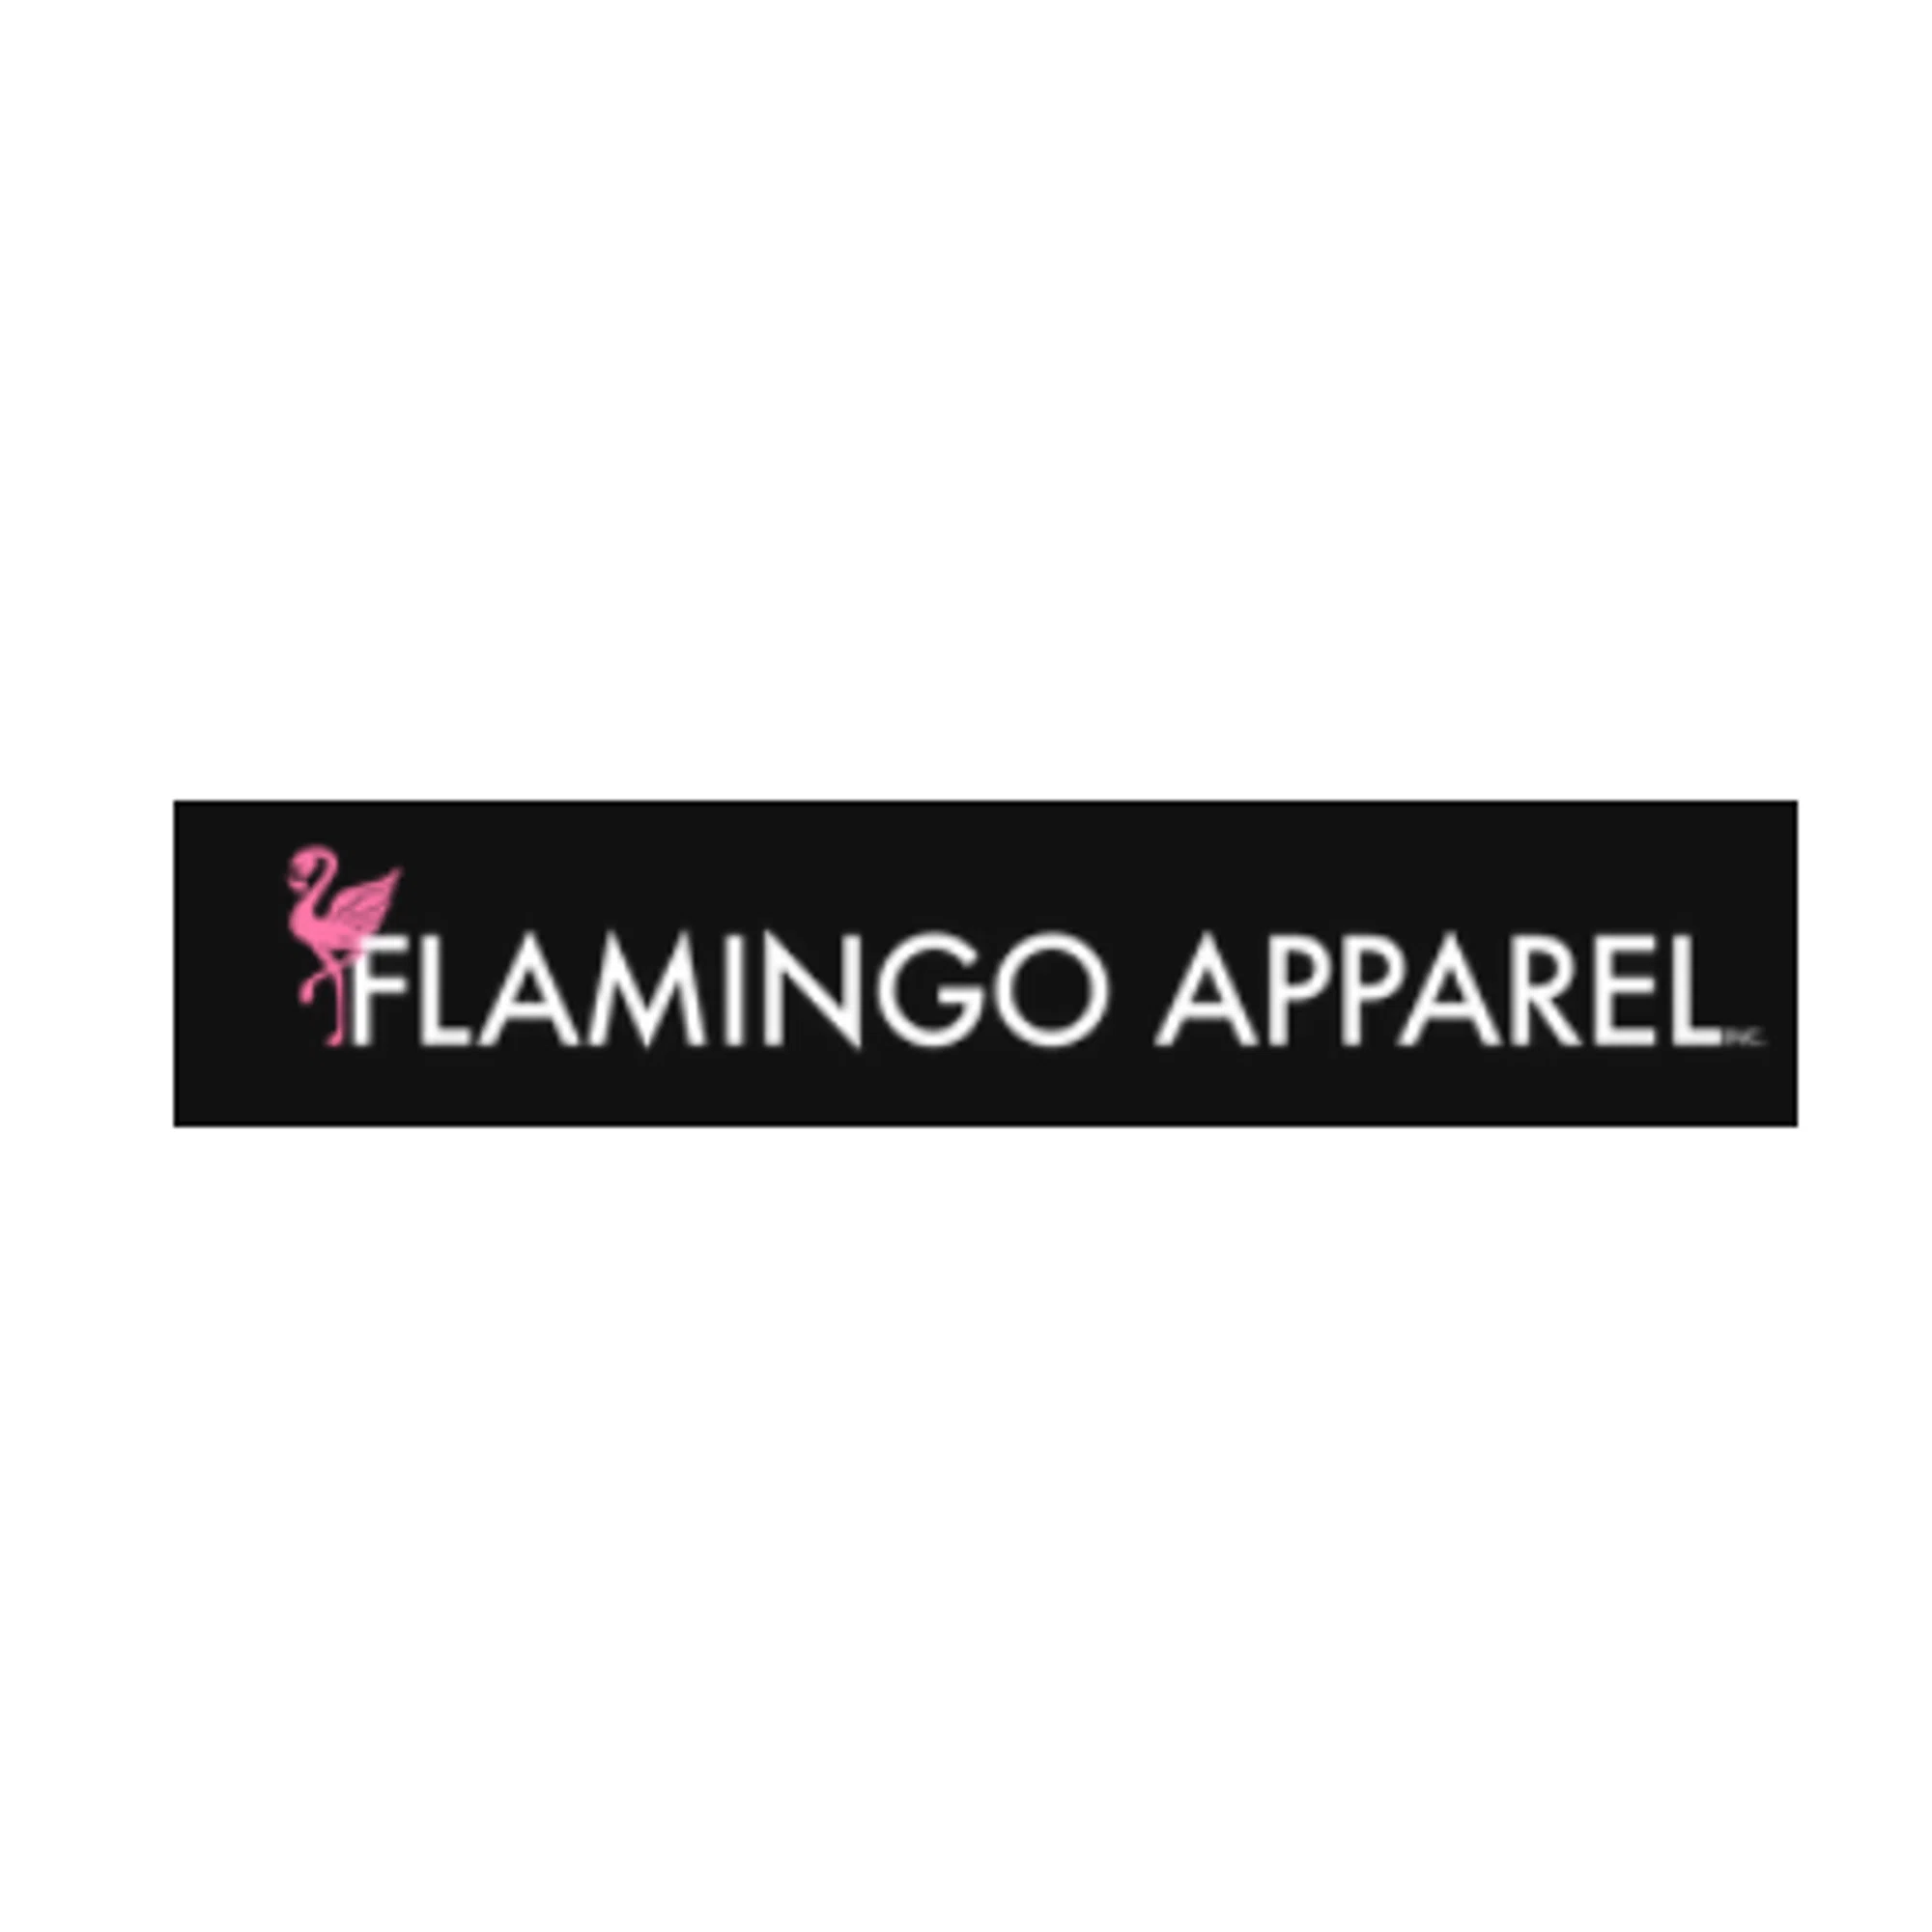 Flamingo Apparel